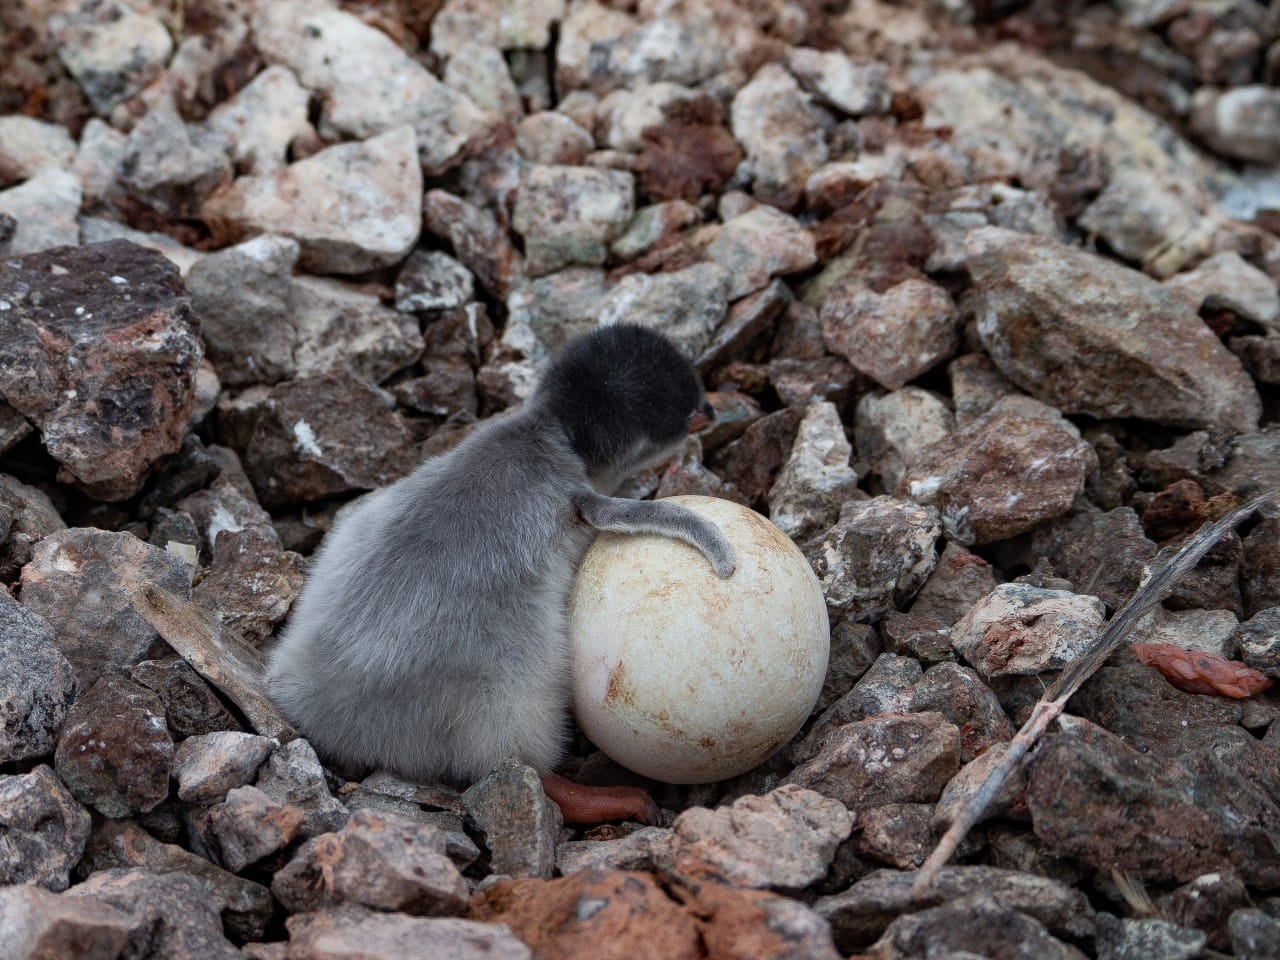 Біля станції "Академік Вернадський" з'явилися перші в цьому році пташенята субантарктичних пінгвінів